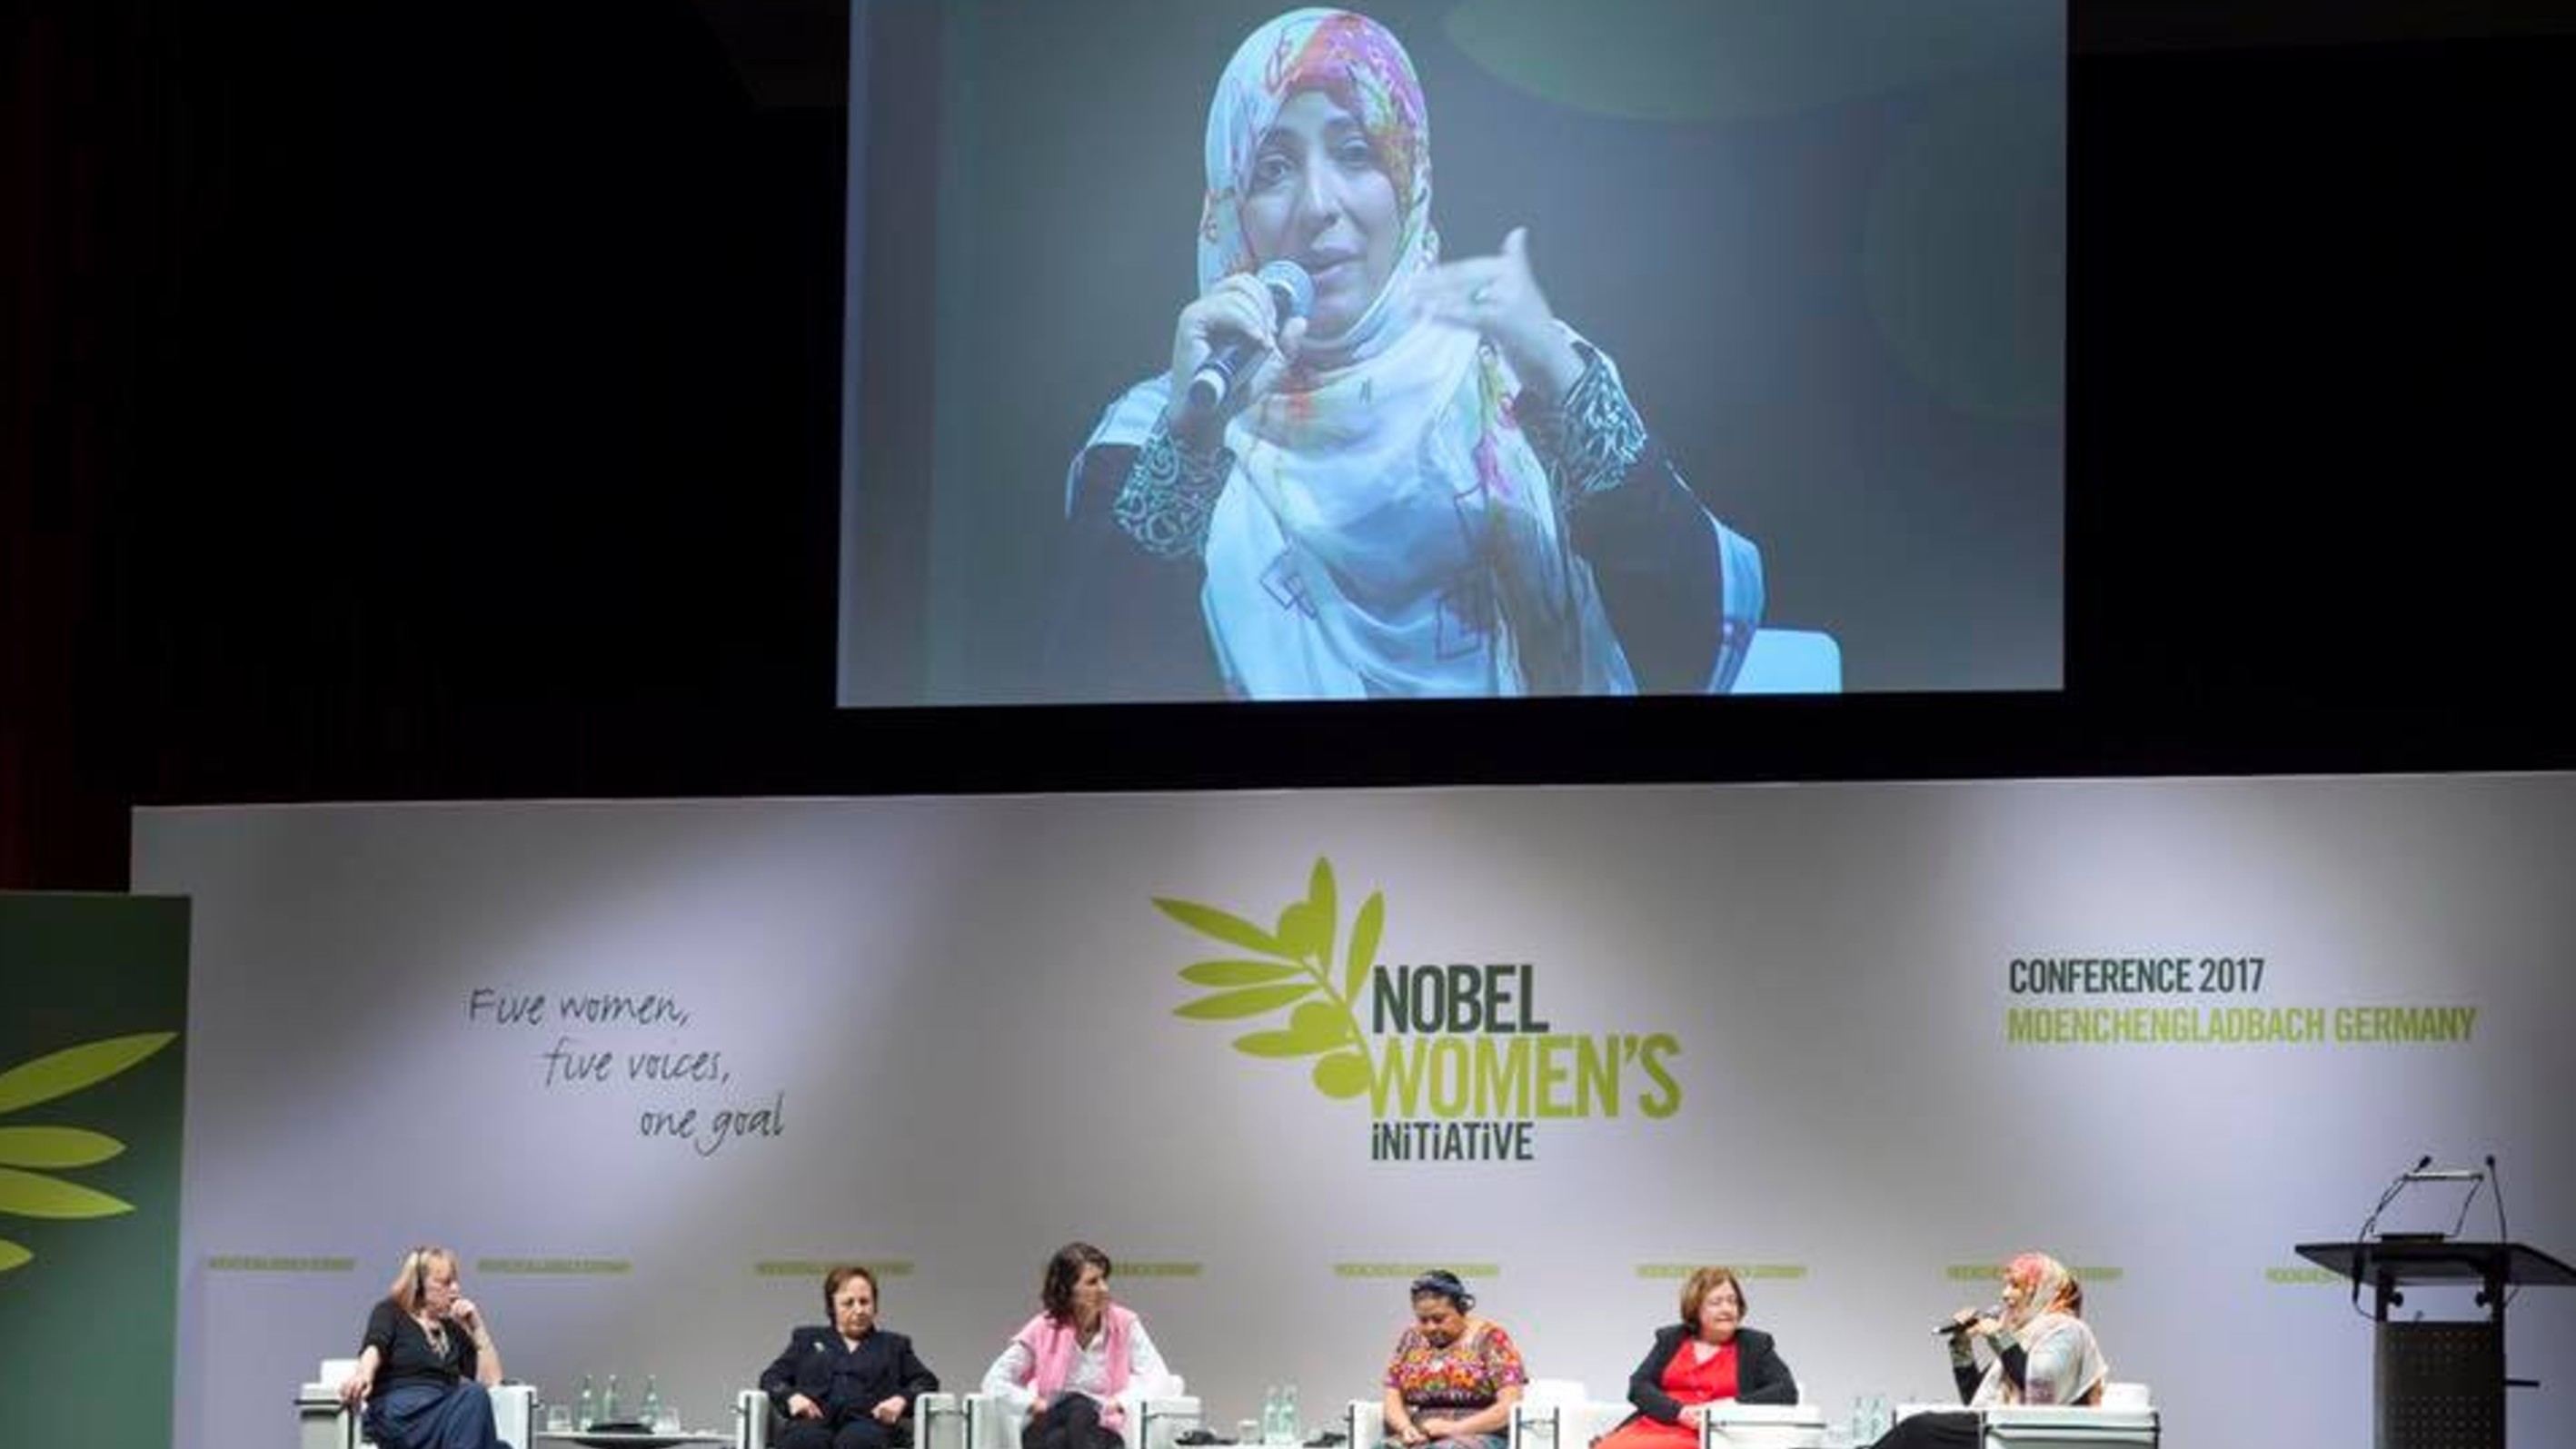 كلمة الناشطة الحائزة على جائزة نوبل للسلام توكل كرمان في الجلسة الافتتاحية بمؤتمر المقاومة النسائية العالمية للحائزات على جائزة نوبل للسلام - ألمانيا